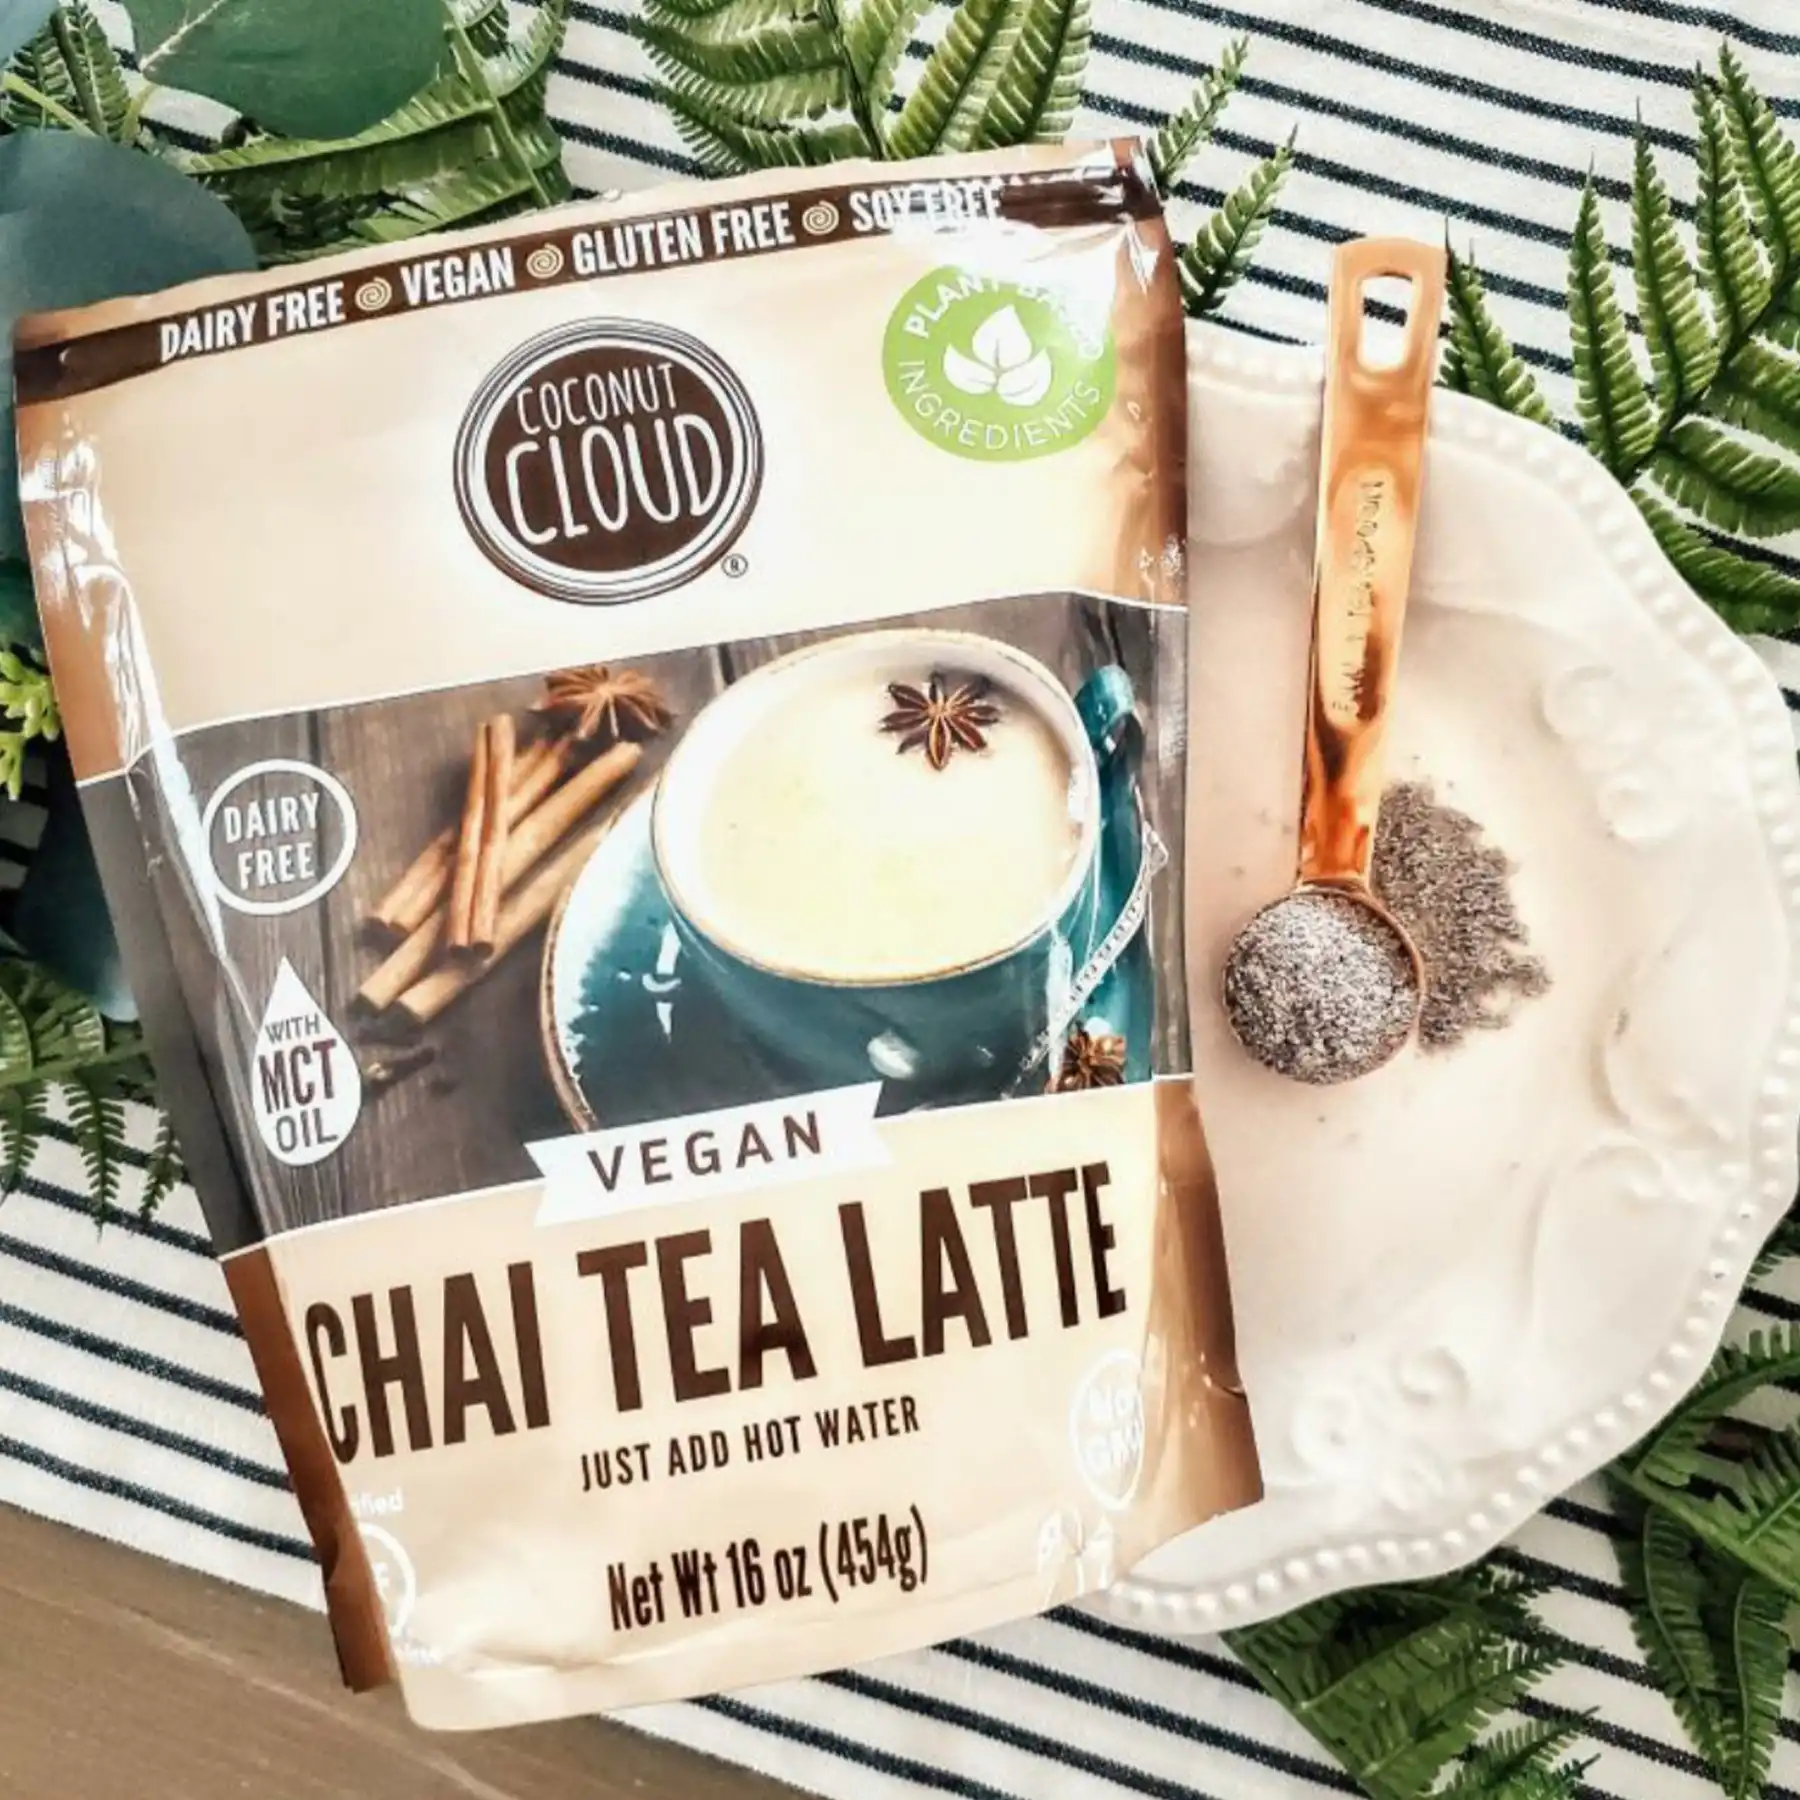 Coconut Cloud - Chai Tea Latte Mix